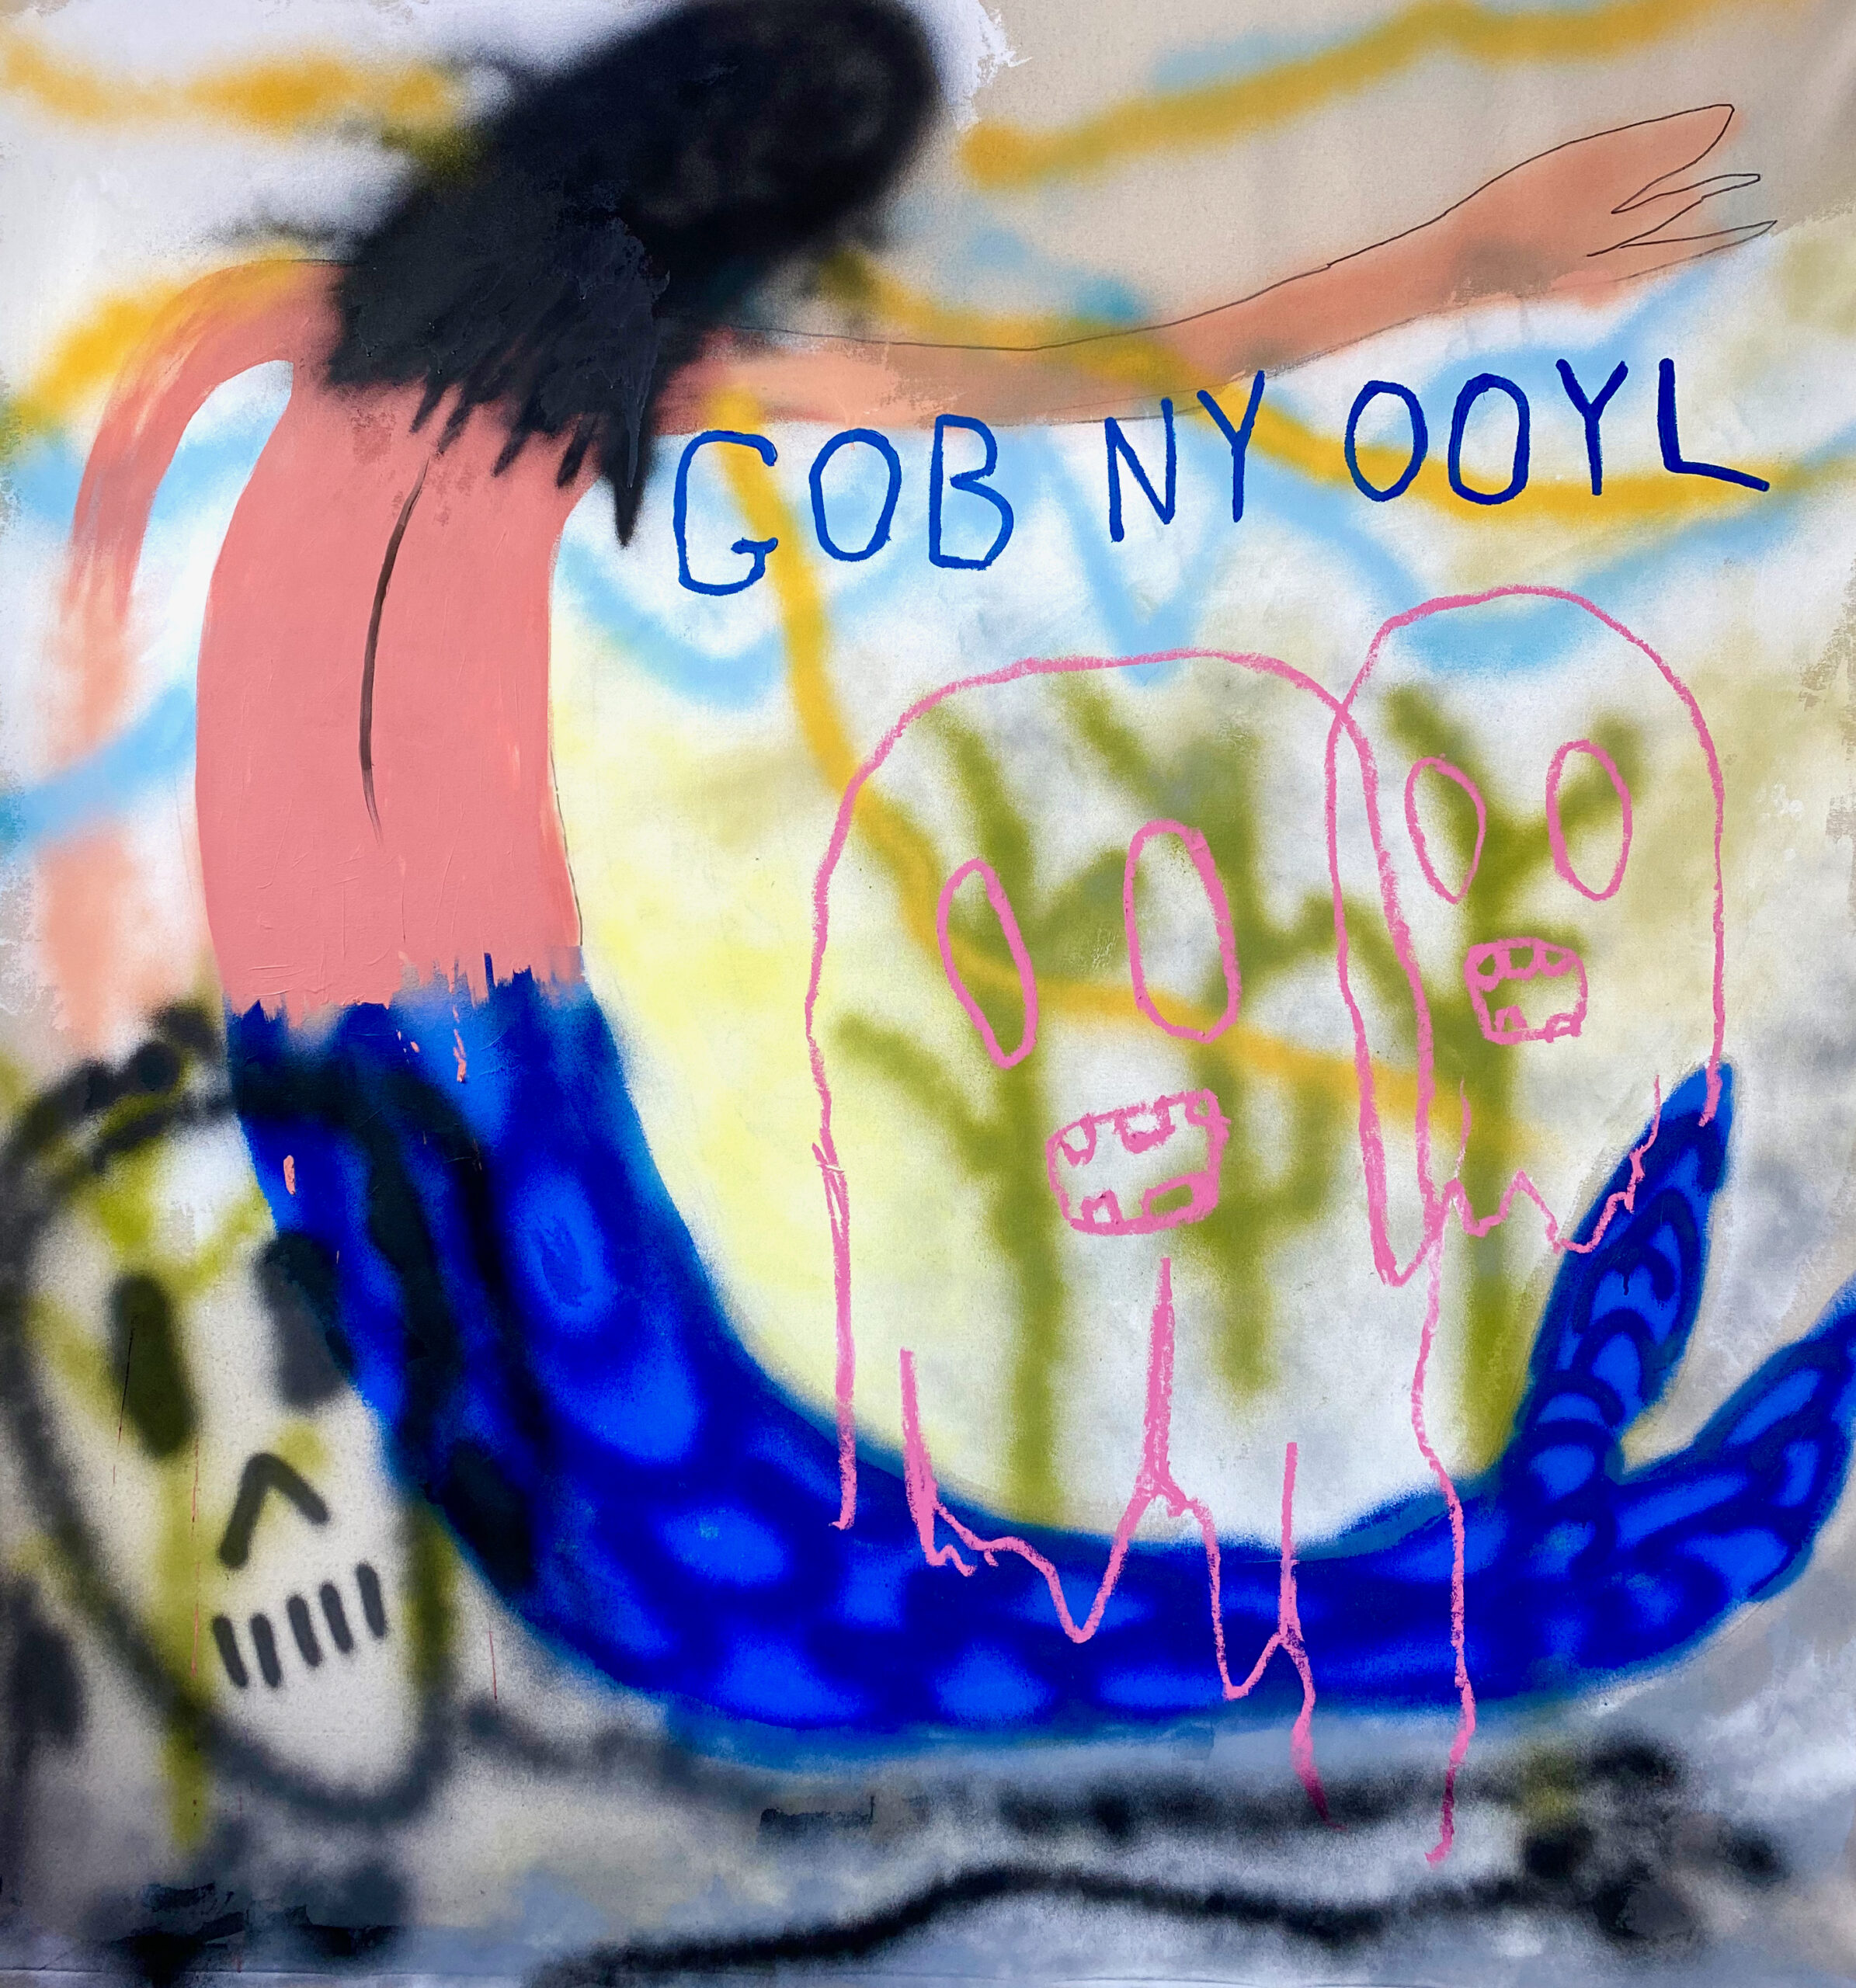 The Mermaid of Gob-Ny-Ooyl, 2022